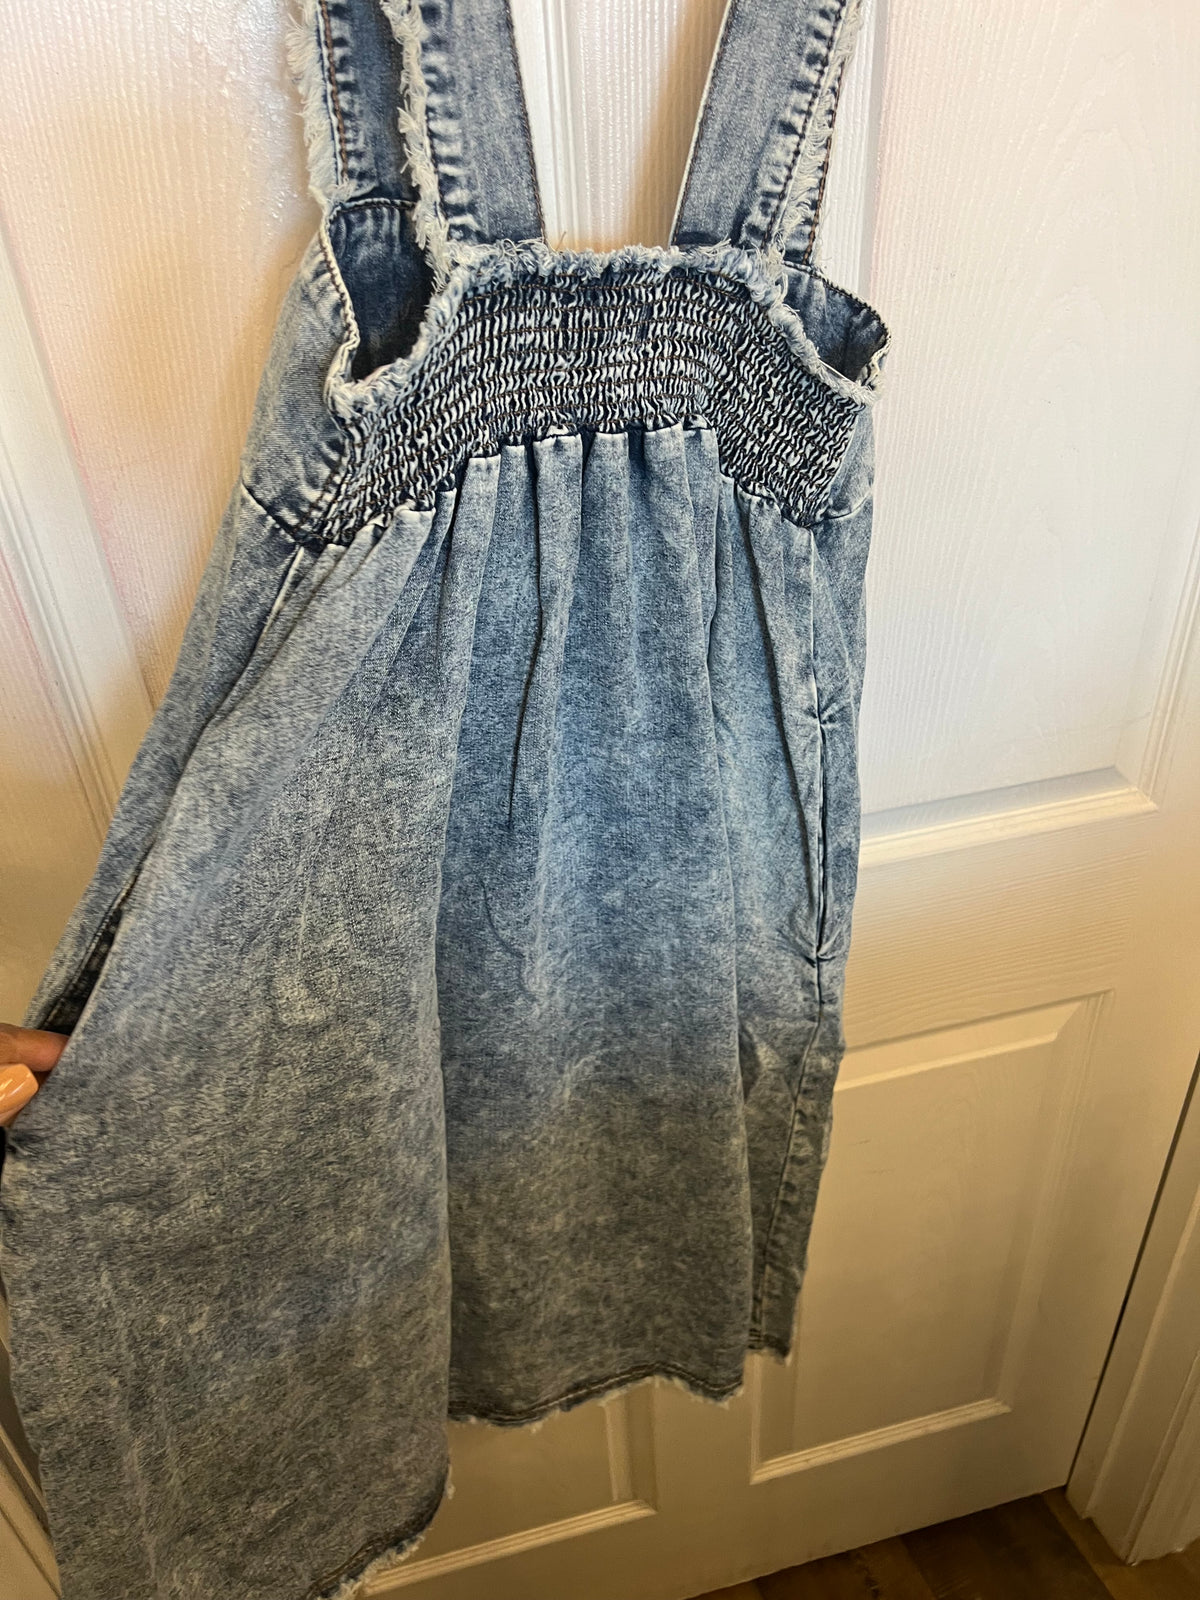 Skirt Overalls